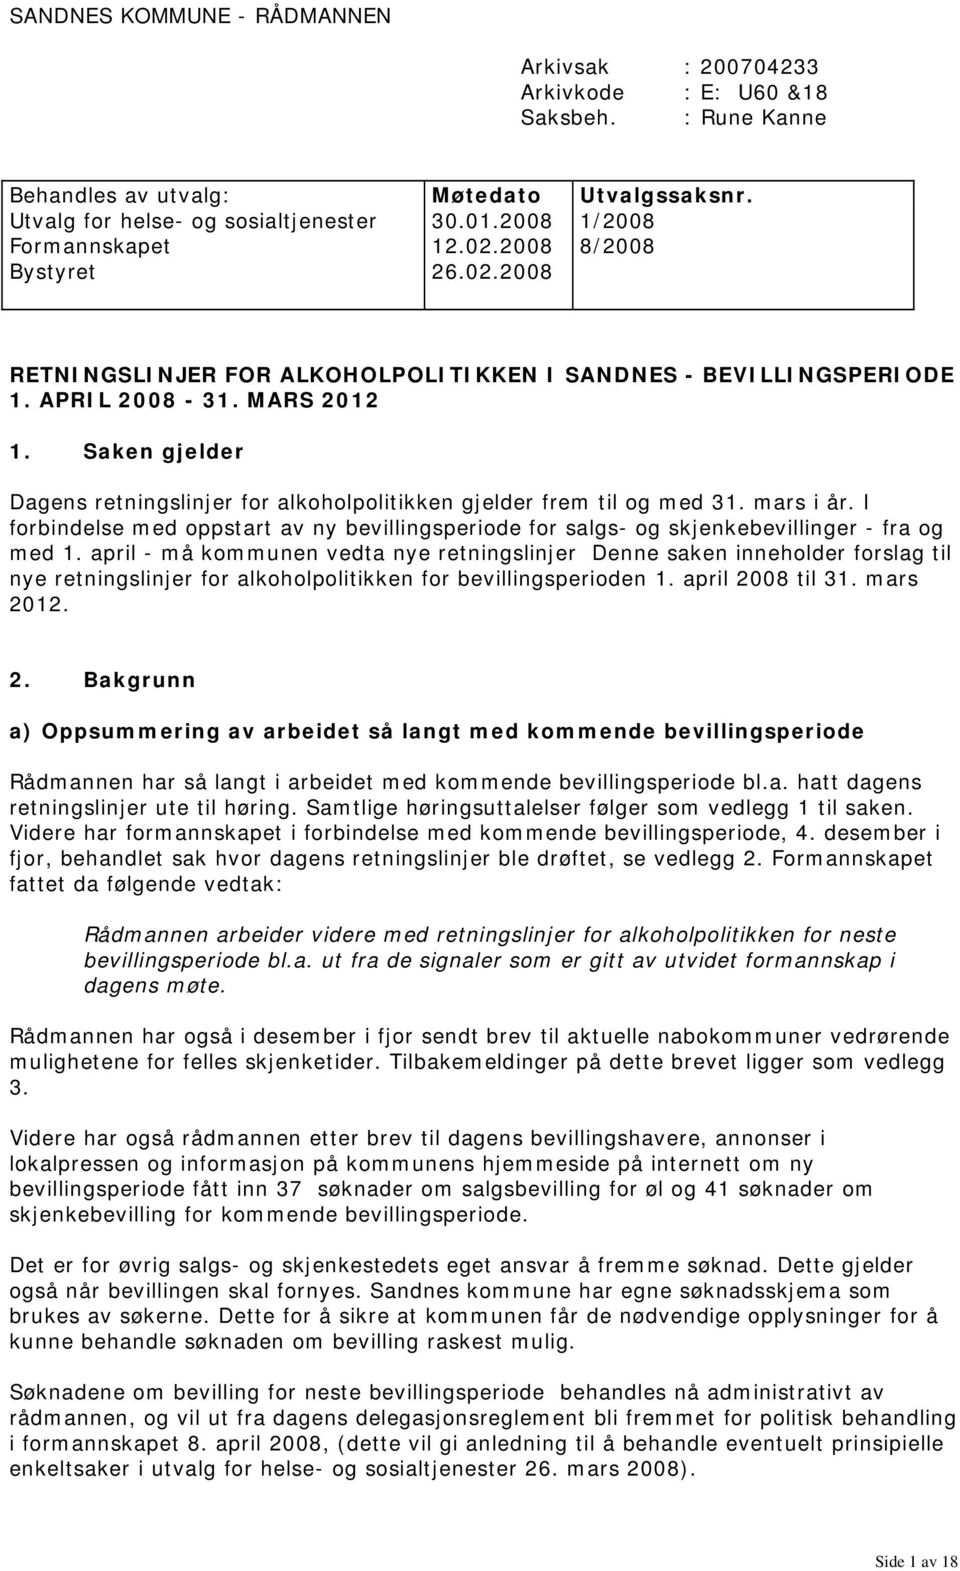 MARS 2012 1. Saken gjelder Dagens retningslinjer for alkoholpolitikken gjelder frem til og med 31. mars i år.